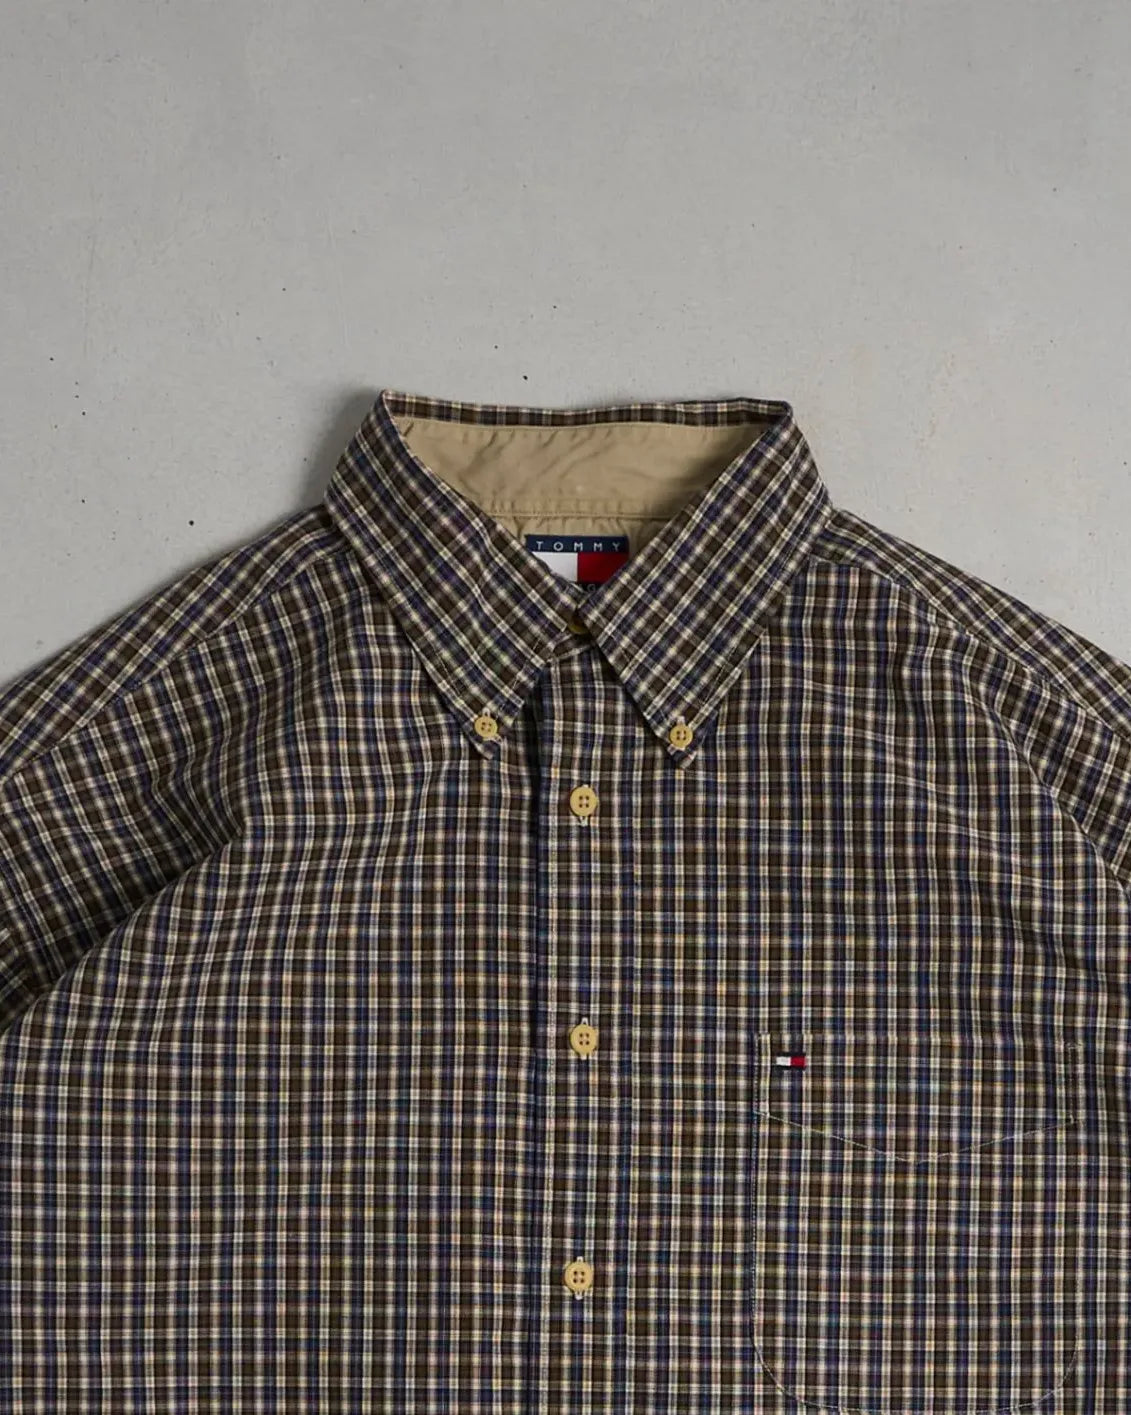 Vintage Tommy Hilfiger Shirt Top